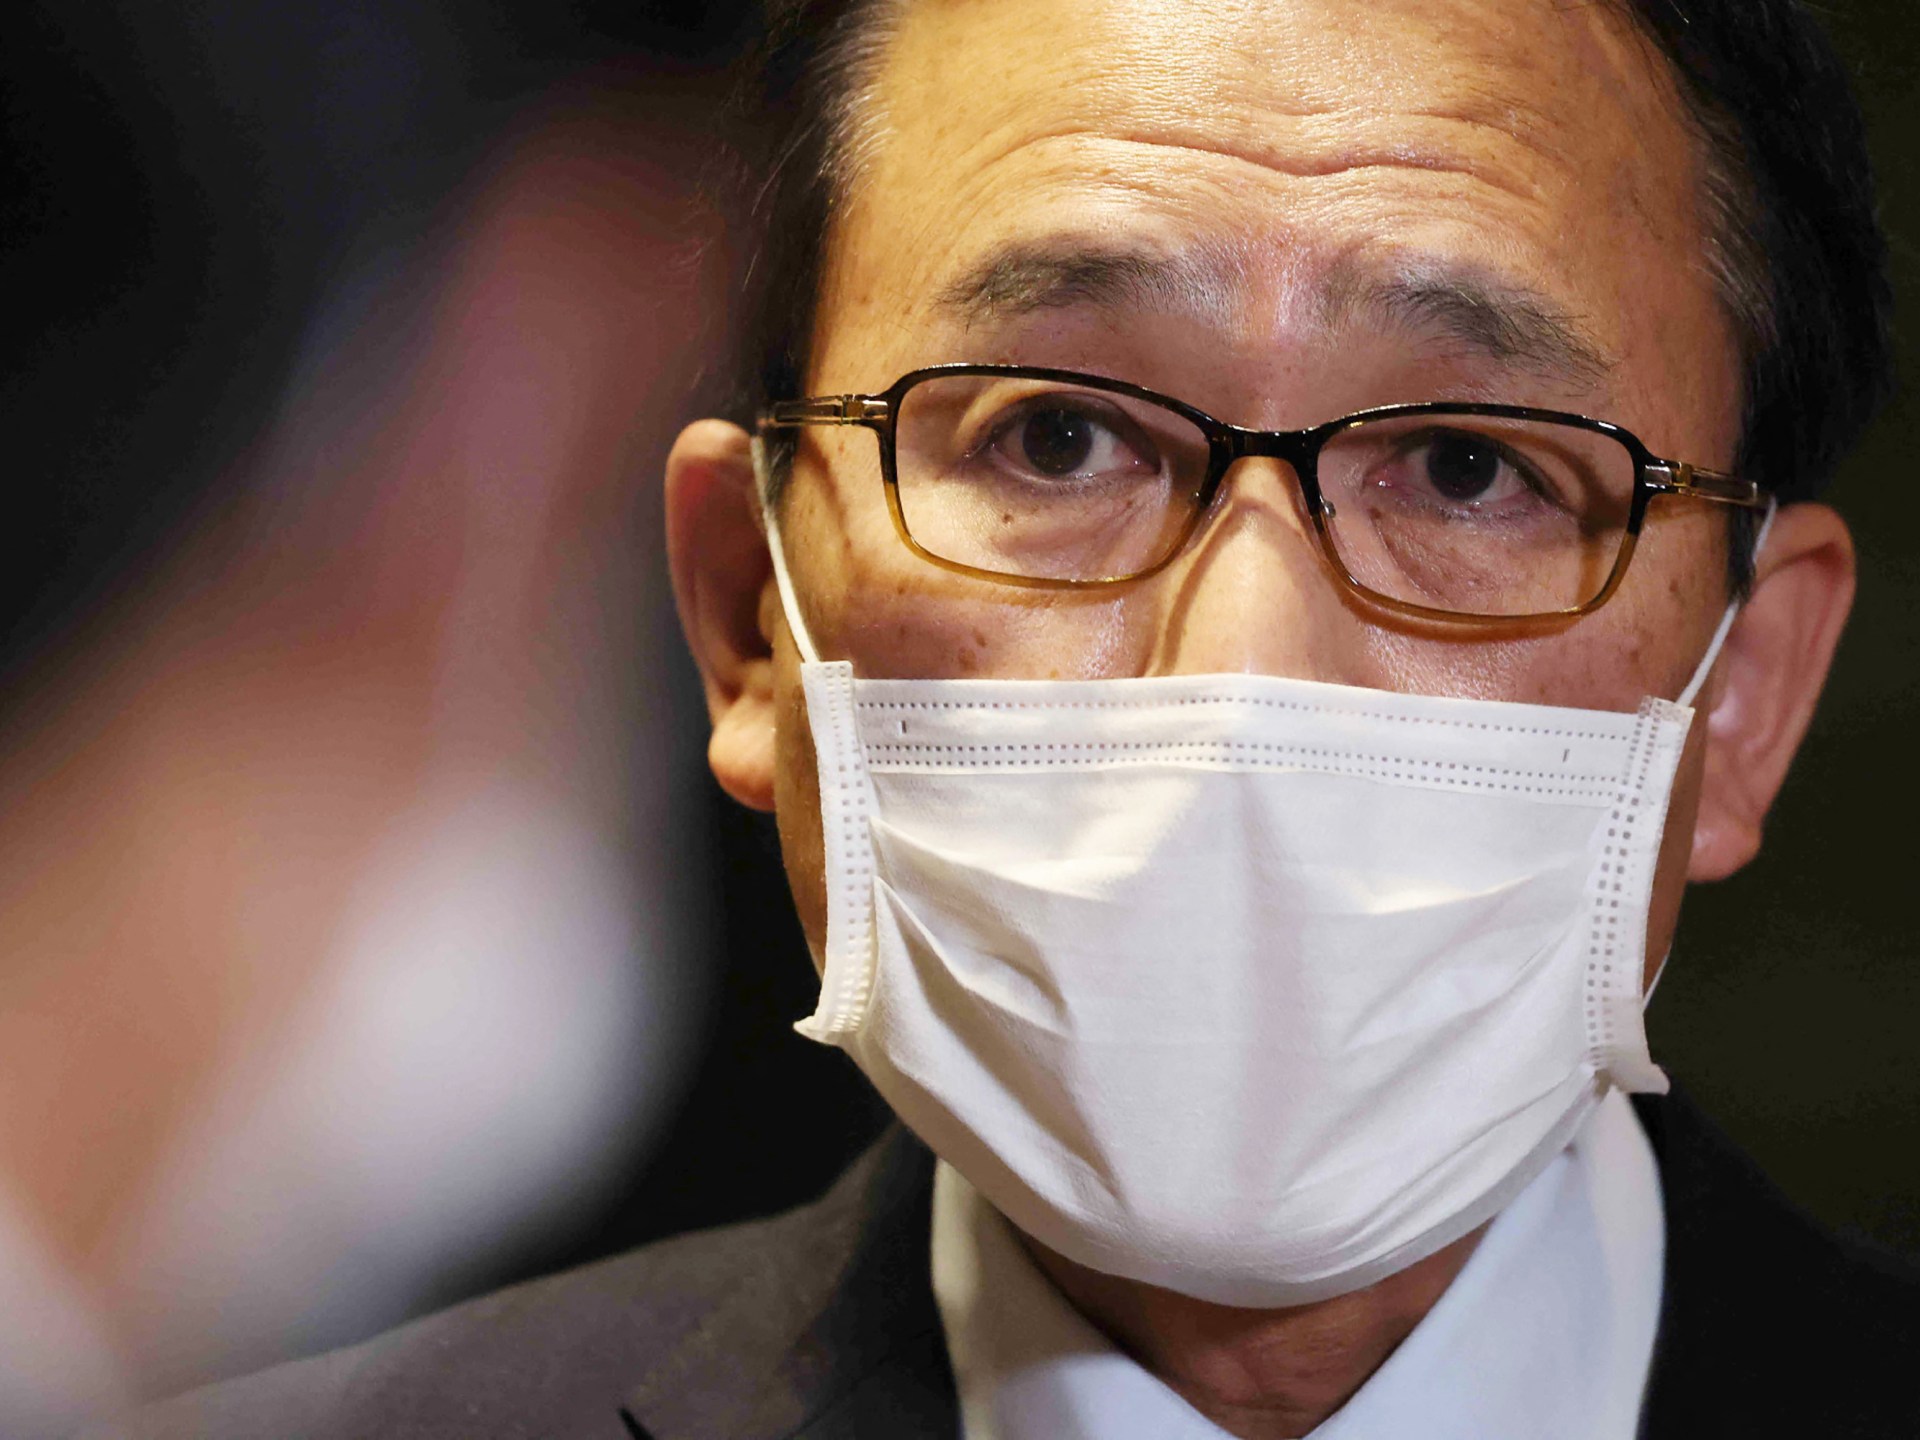 Le ministre japonais de la Justice démissionne suite à des commentaires sur la peine de mort |  Actualités sur la peine de mort